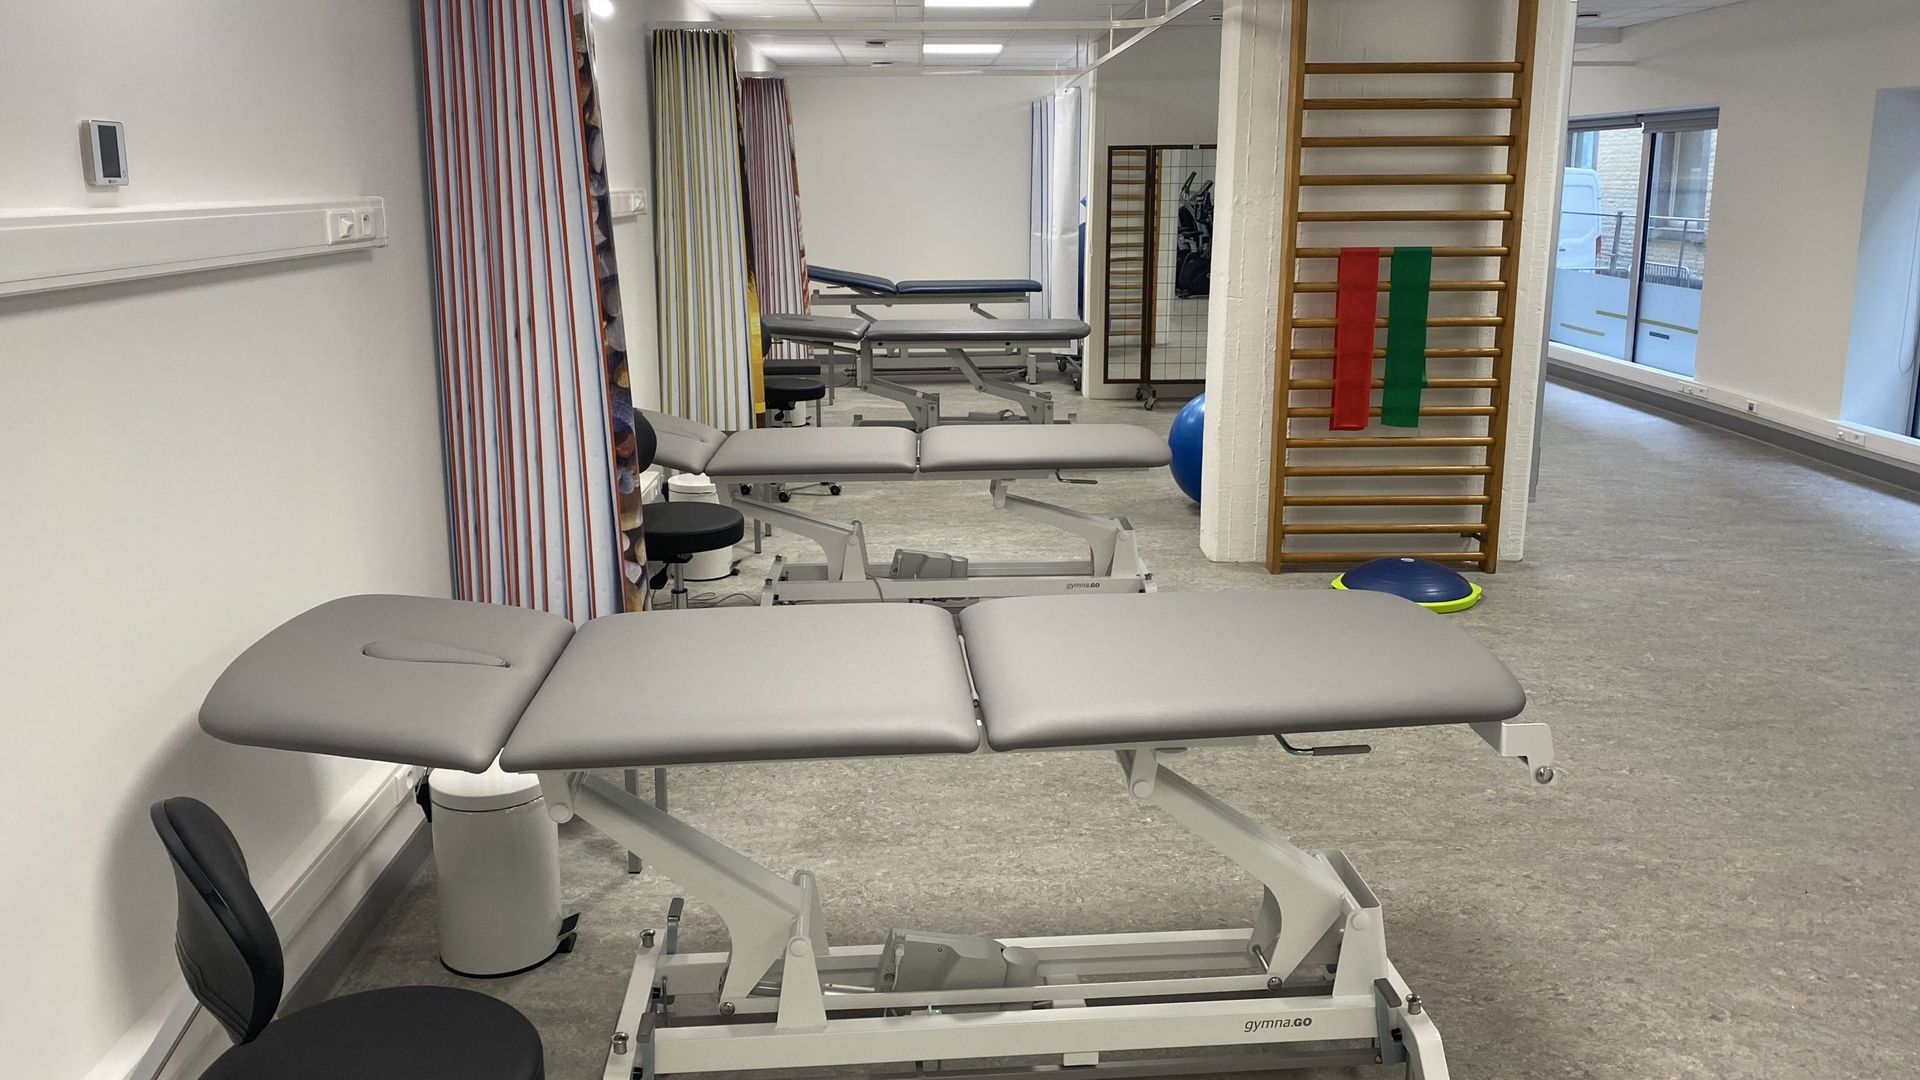 La salle où seront dispensés les soins de kinésithérapie